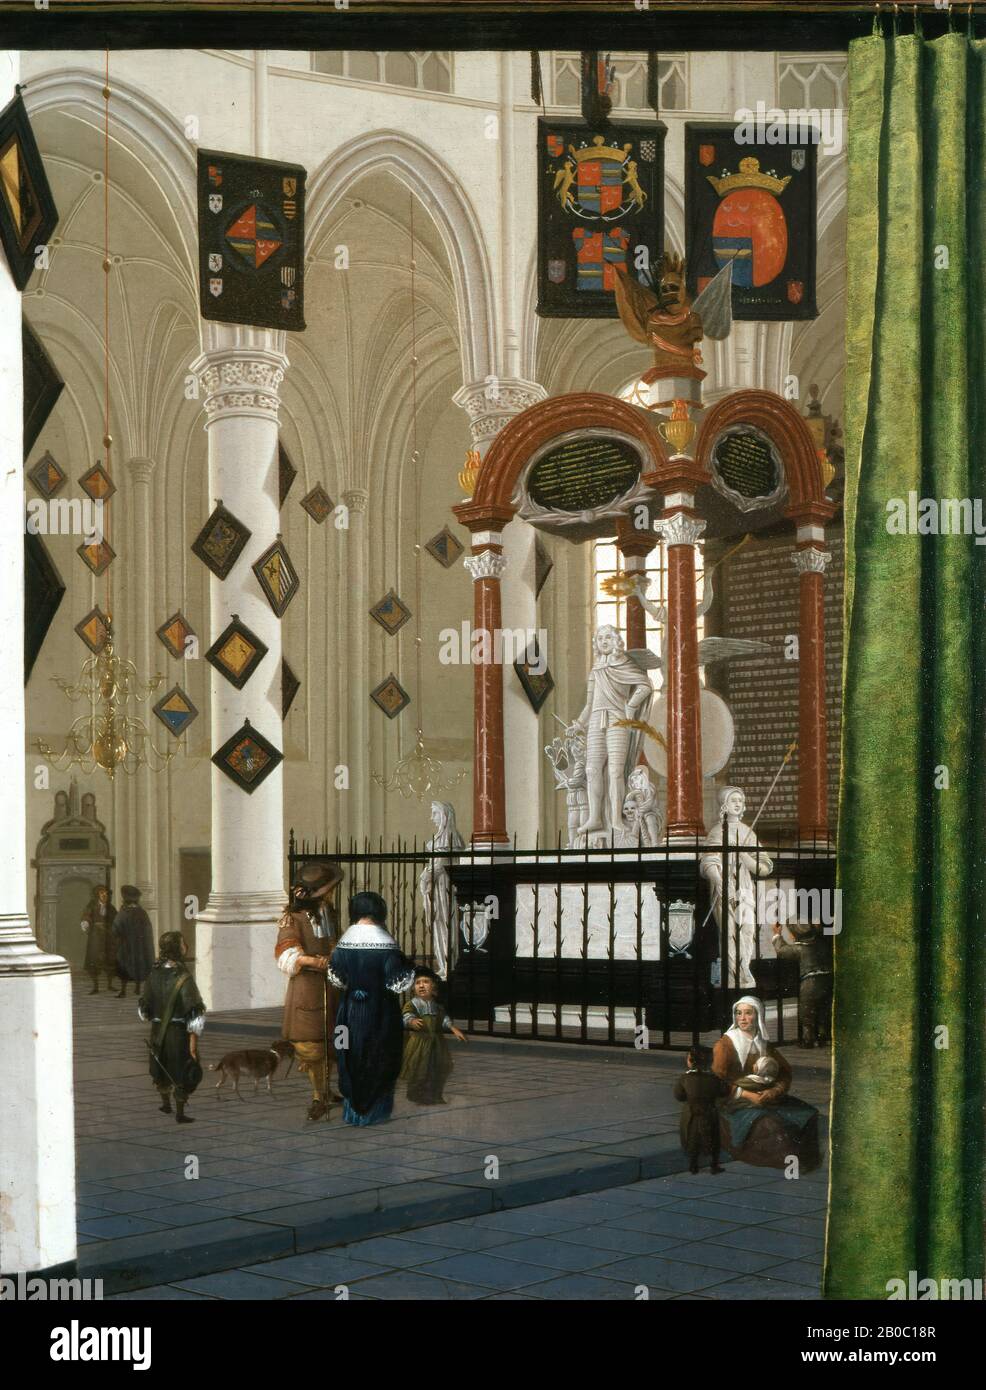 Hendrik Cornelisz. Van Vliet, Grab von Admiral Jacob Van Wassenaer im Chor der Jacobskerk, 1667, Öl auf Leinwand, 37 Zoll x 28 Zoll (94 cm x 71,1 cm), Mitte des siebzehnten Jahrhunderts Delft, Hendrick Cornelisz. Van Vliet war einer von mehreren Malern, die sich auf illusionistische Renderings der Innenräume der beiden großen gotischen Kirchen der Stadt spezialisiert hatten. Neben der gewissenhaften Untersuchung der visuellen Qualitäten von Licht und Raum waren diese Ansichten auch Ausdruck des Vergnügens der Beobachtung und des Nationalstolzes, wobei sie auf die Gedenkstätten der Helden in Hollands letzter Stru aufmerksam wurden Stockfoto